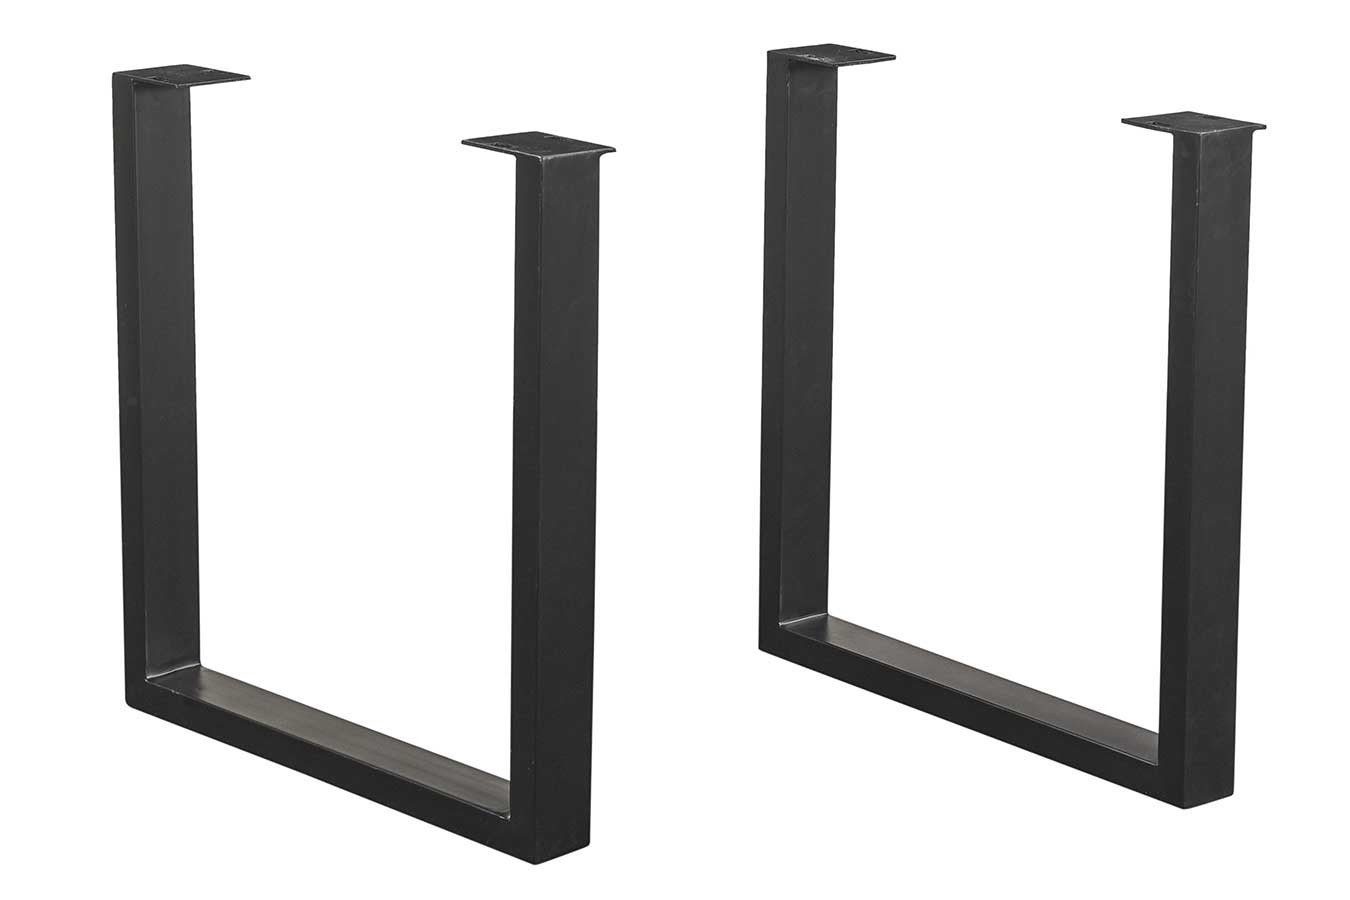 Tischhelden Tischbein Tischgestell Stahl U-Profil schwarz 2er Set